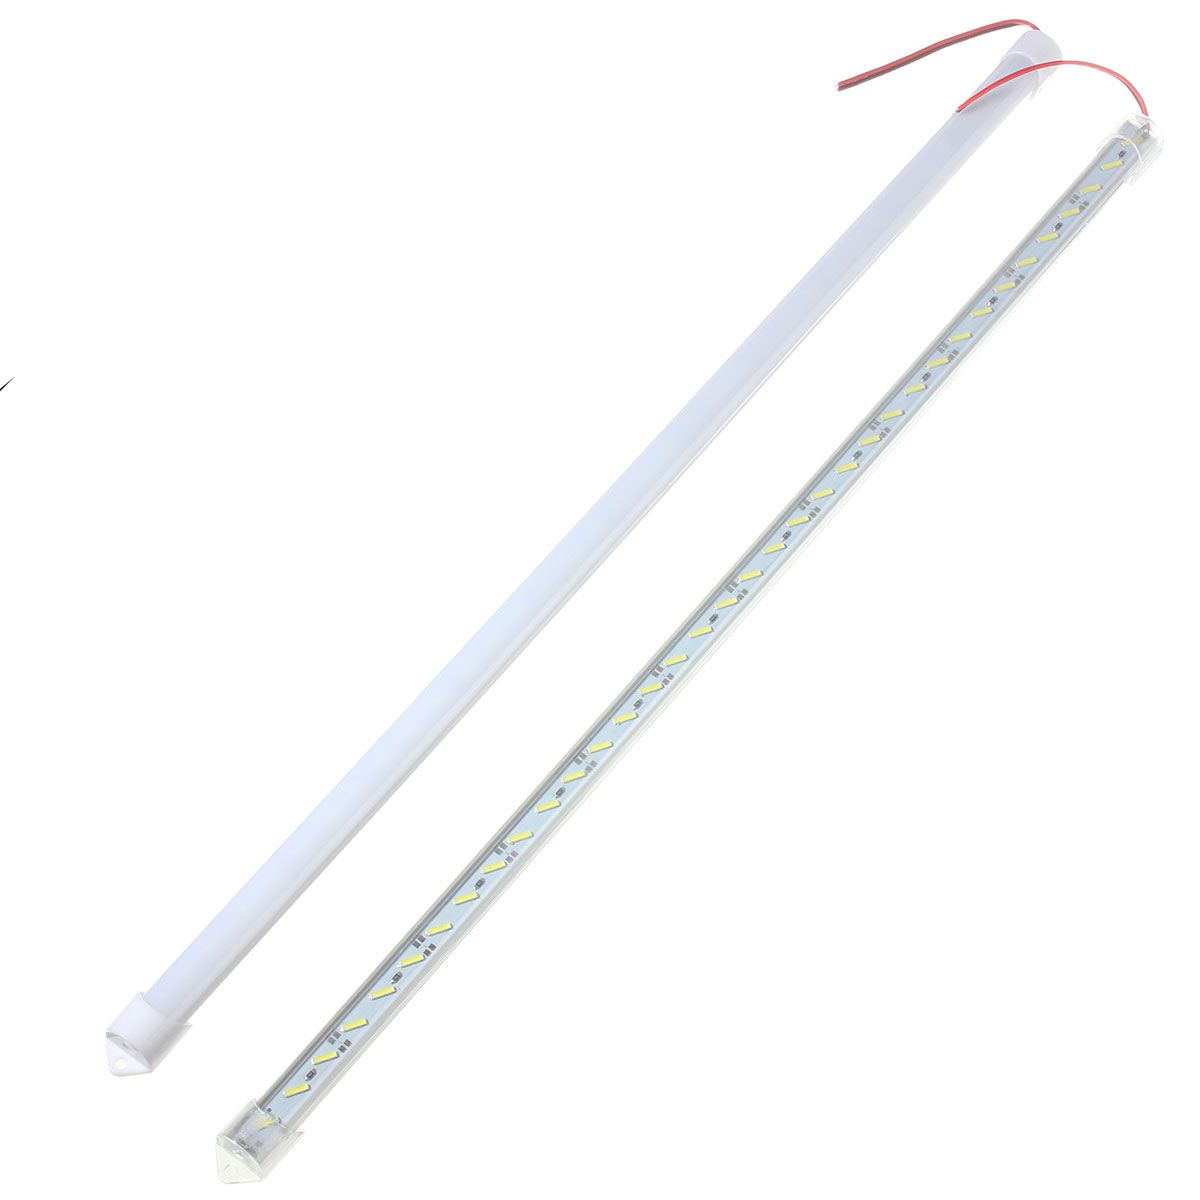 50CM-8520-SMD-Cool-White-LED-Rigid-Strip-Aluminum-MilkClear-Case-Tube-Light-Lamp-DC12V-1106621